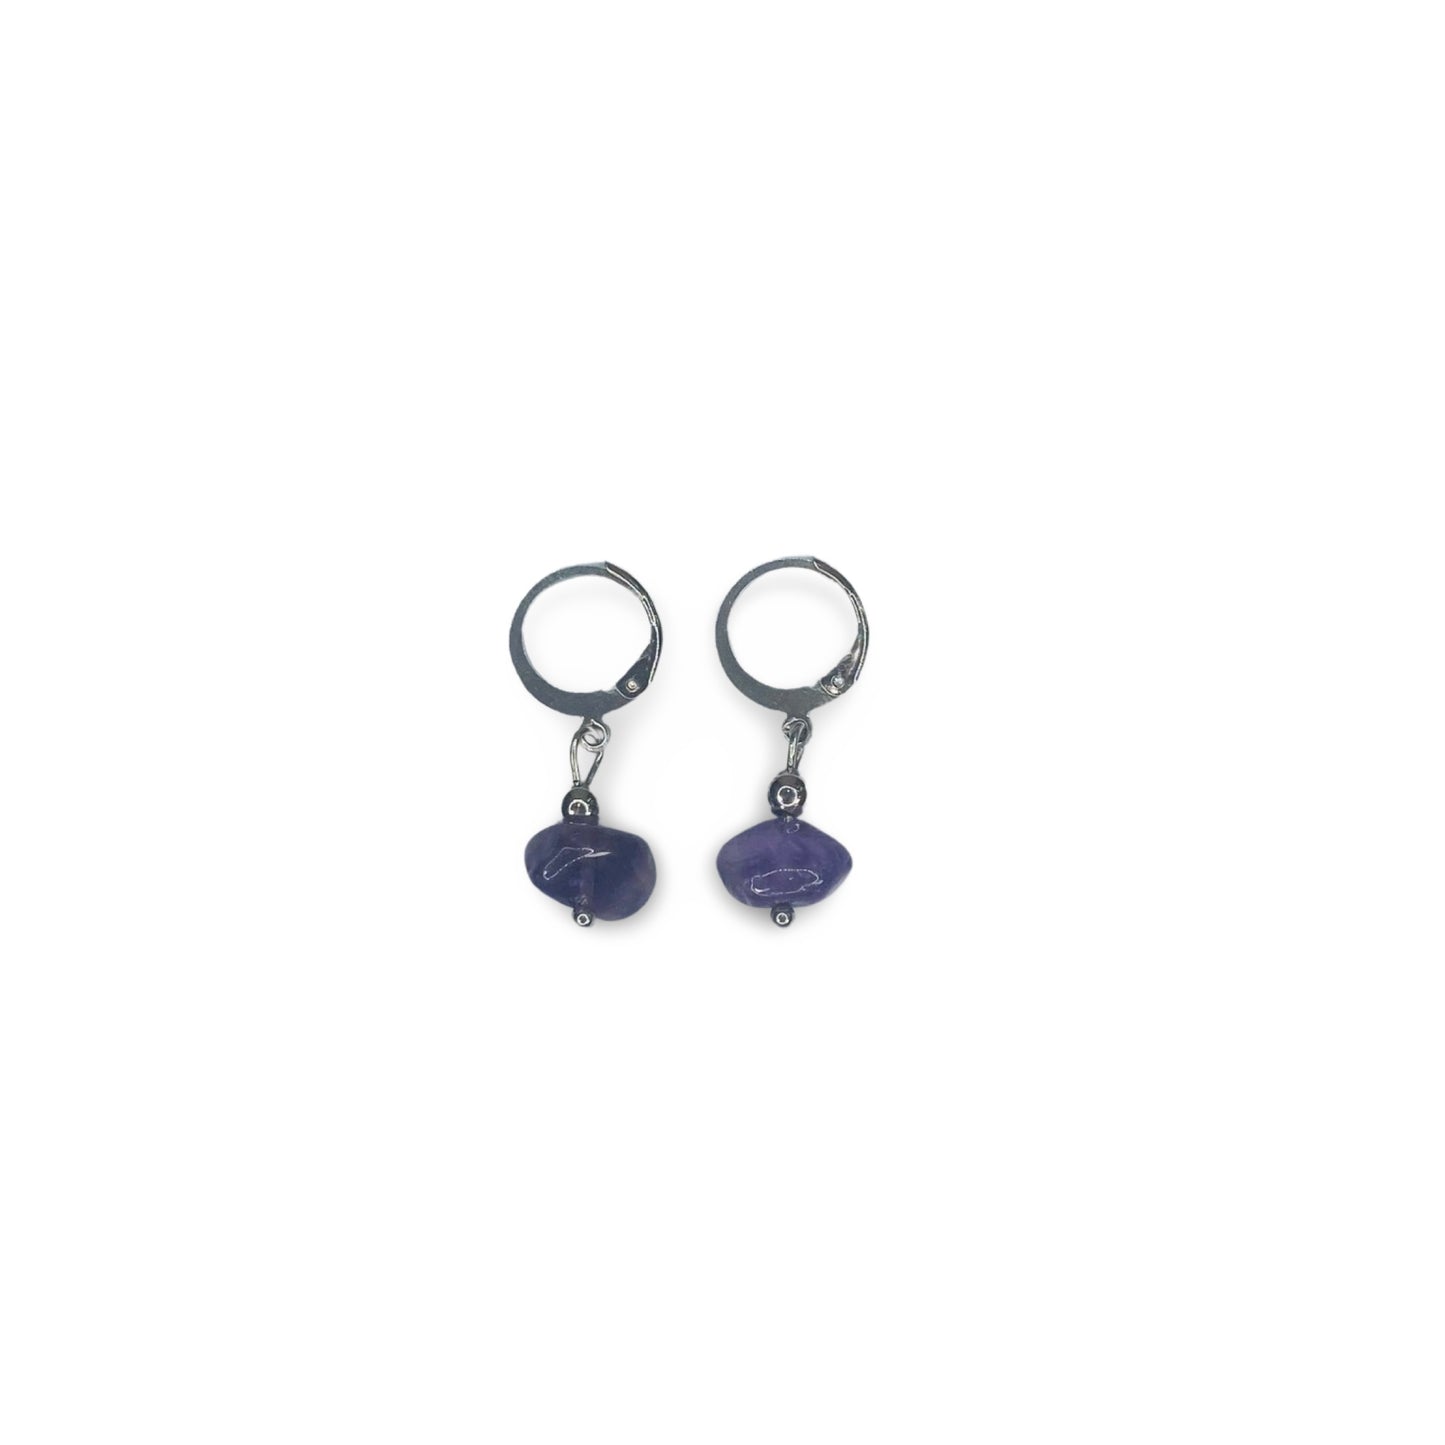 Hoops Earrings with Amethyst